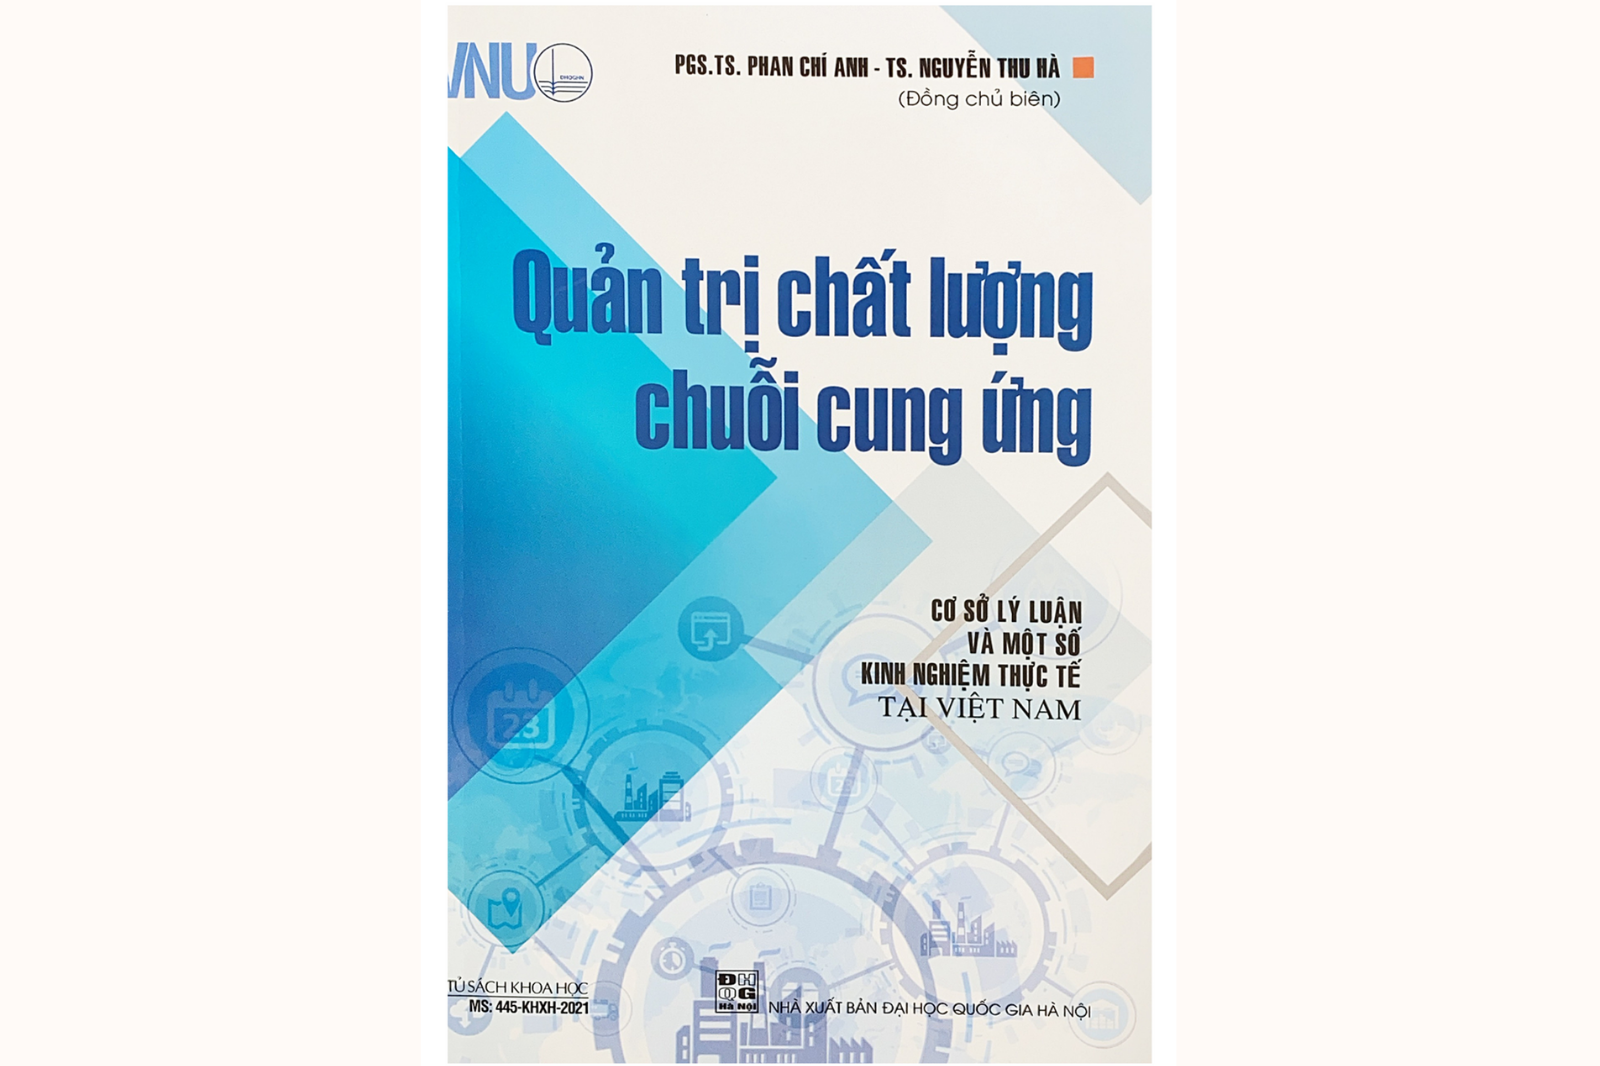 Quản trị chất lượng chuỗi cung ứng cơ sở lý luận và một số kinh nghiệm thực tế tại Việt Nam 